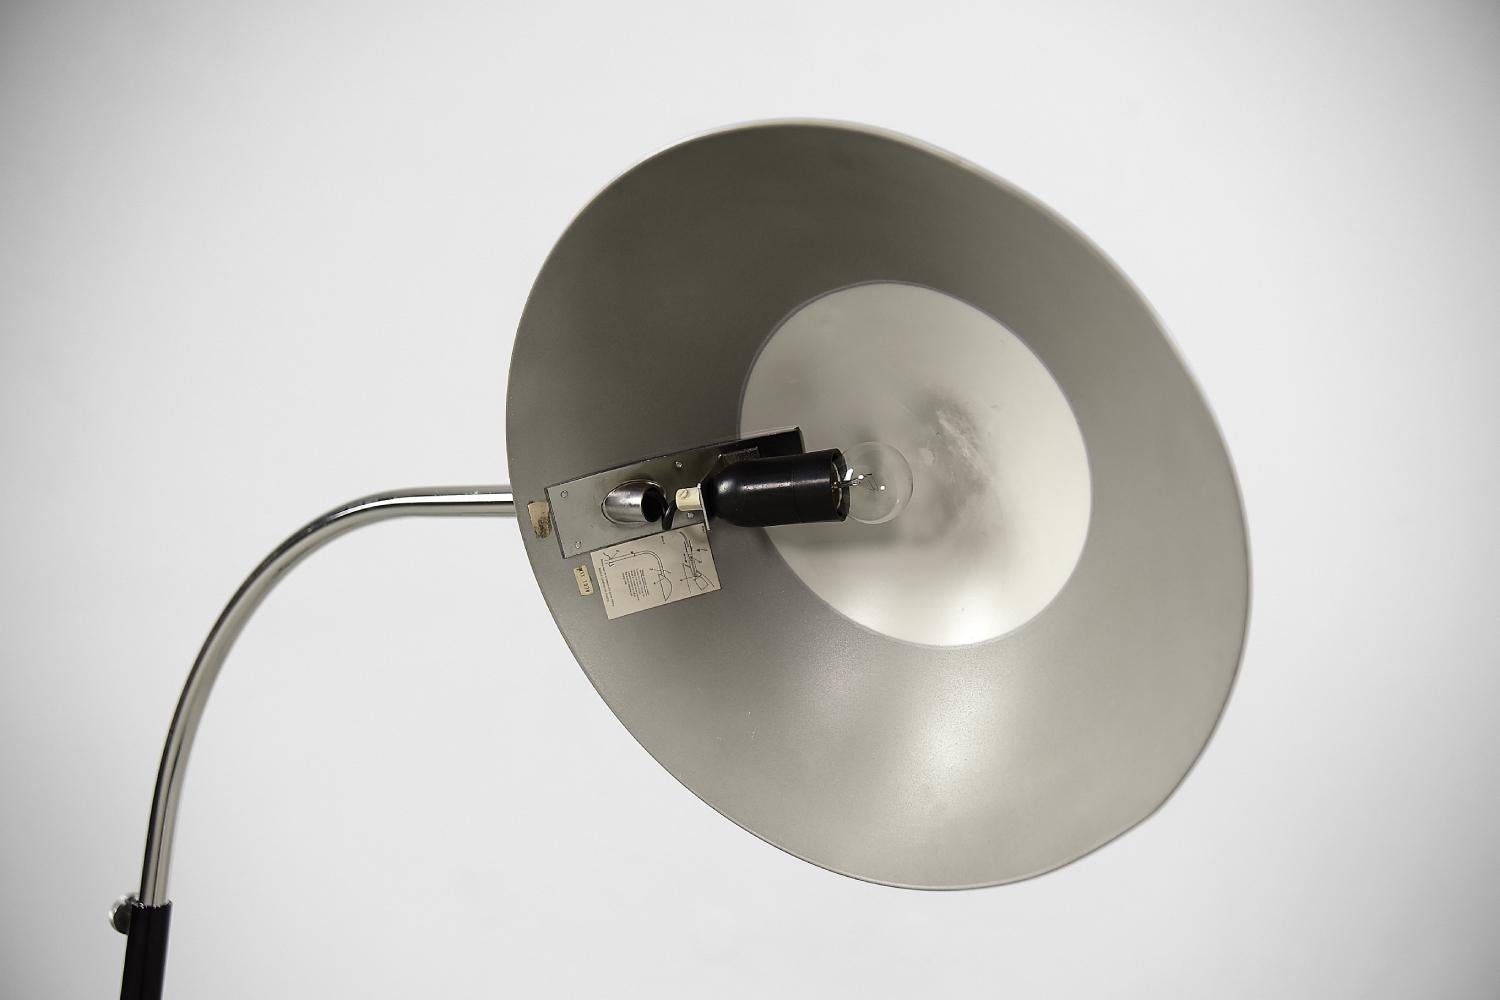 Ce lampadaire Komet 1557 a été conçu par Per Sundstedt pour la manufacture suédoise Kosta Lampan AB dans les années 1970. Cette lampe est fabriquée en métal : chromé et noir. Il dispose d'un système de réglage de la hauteur dans une fourchette de